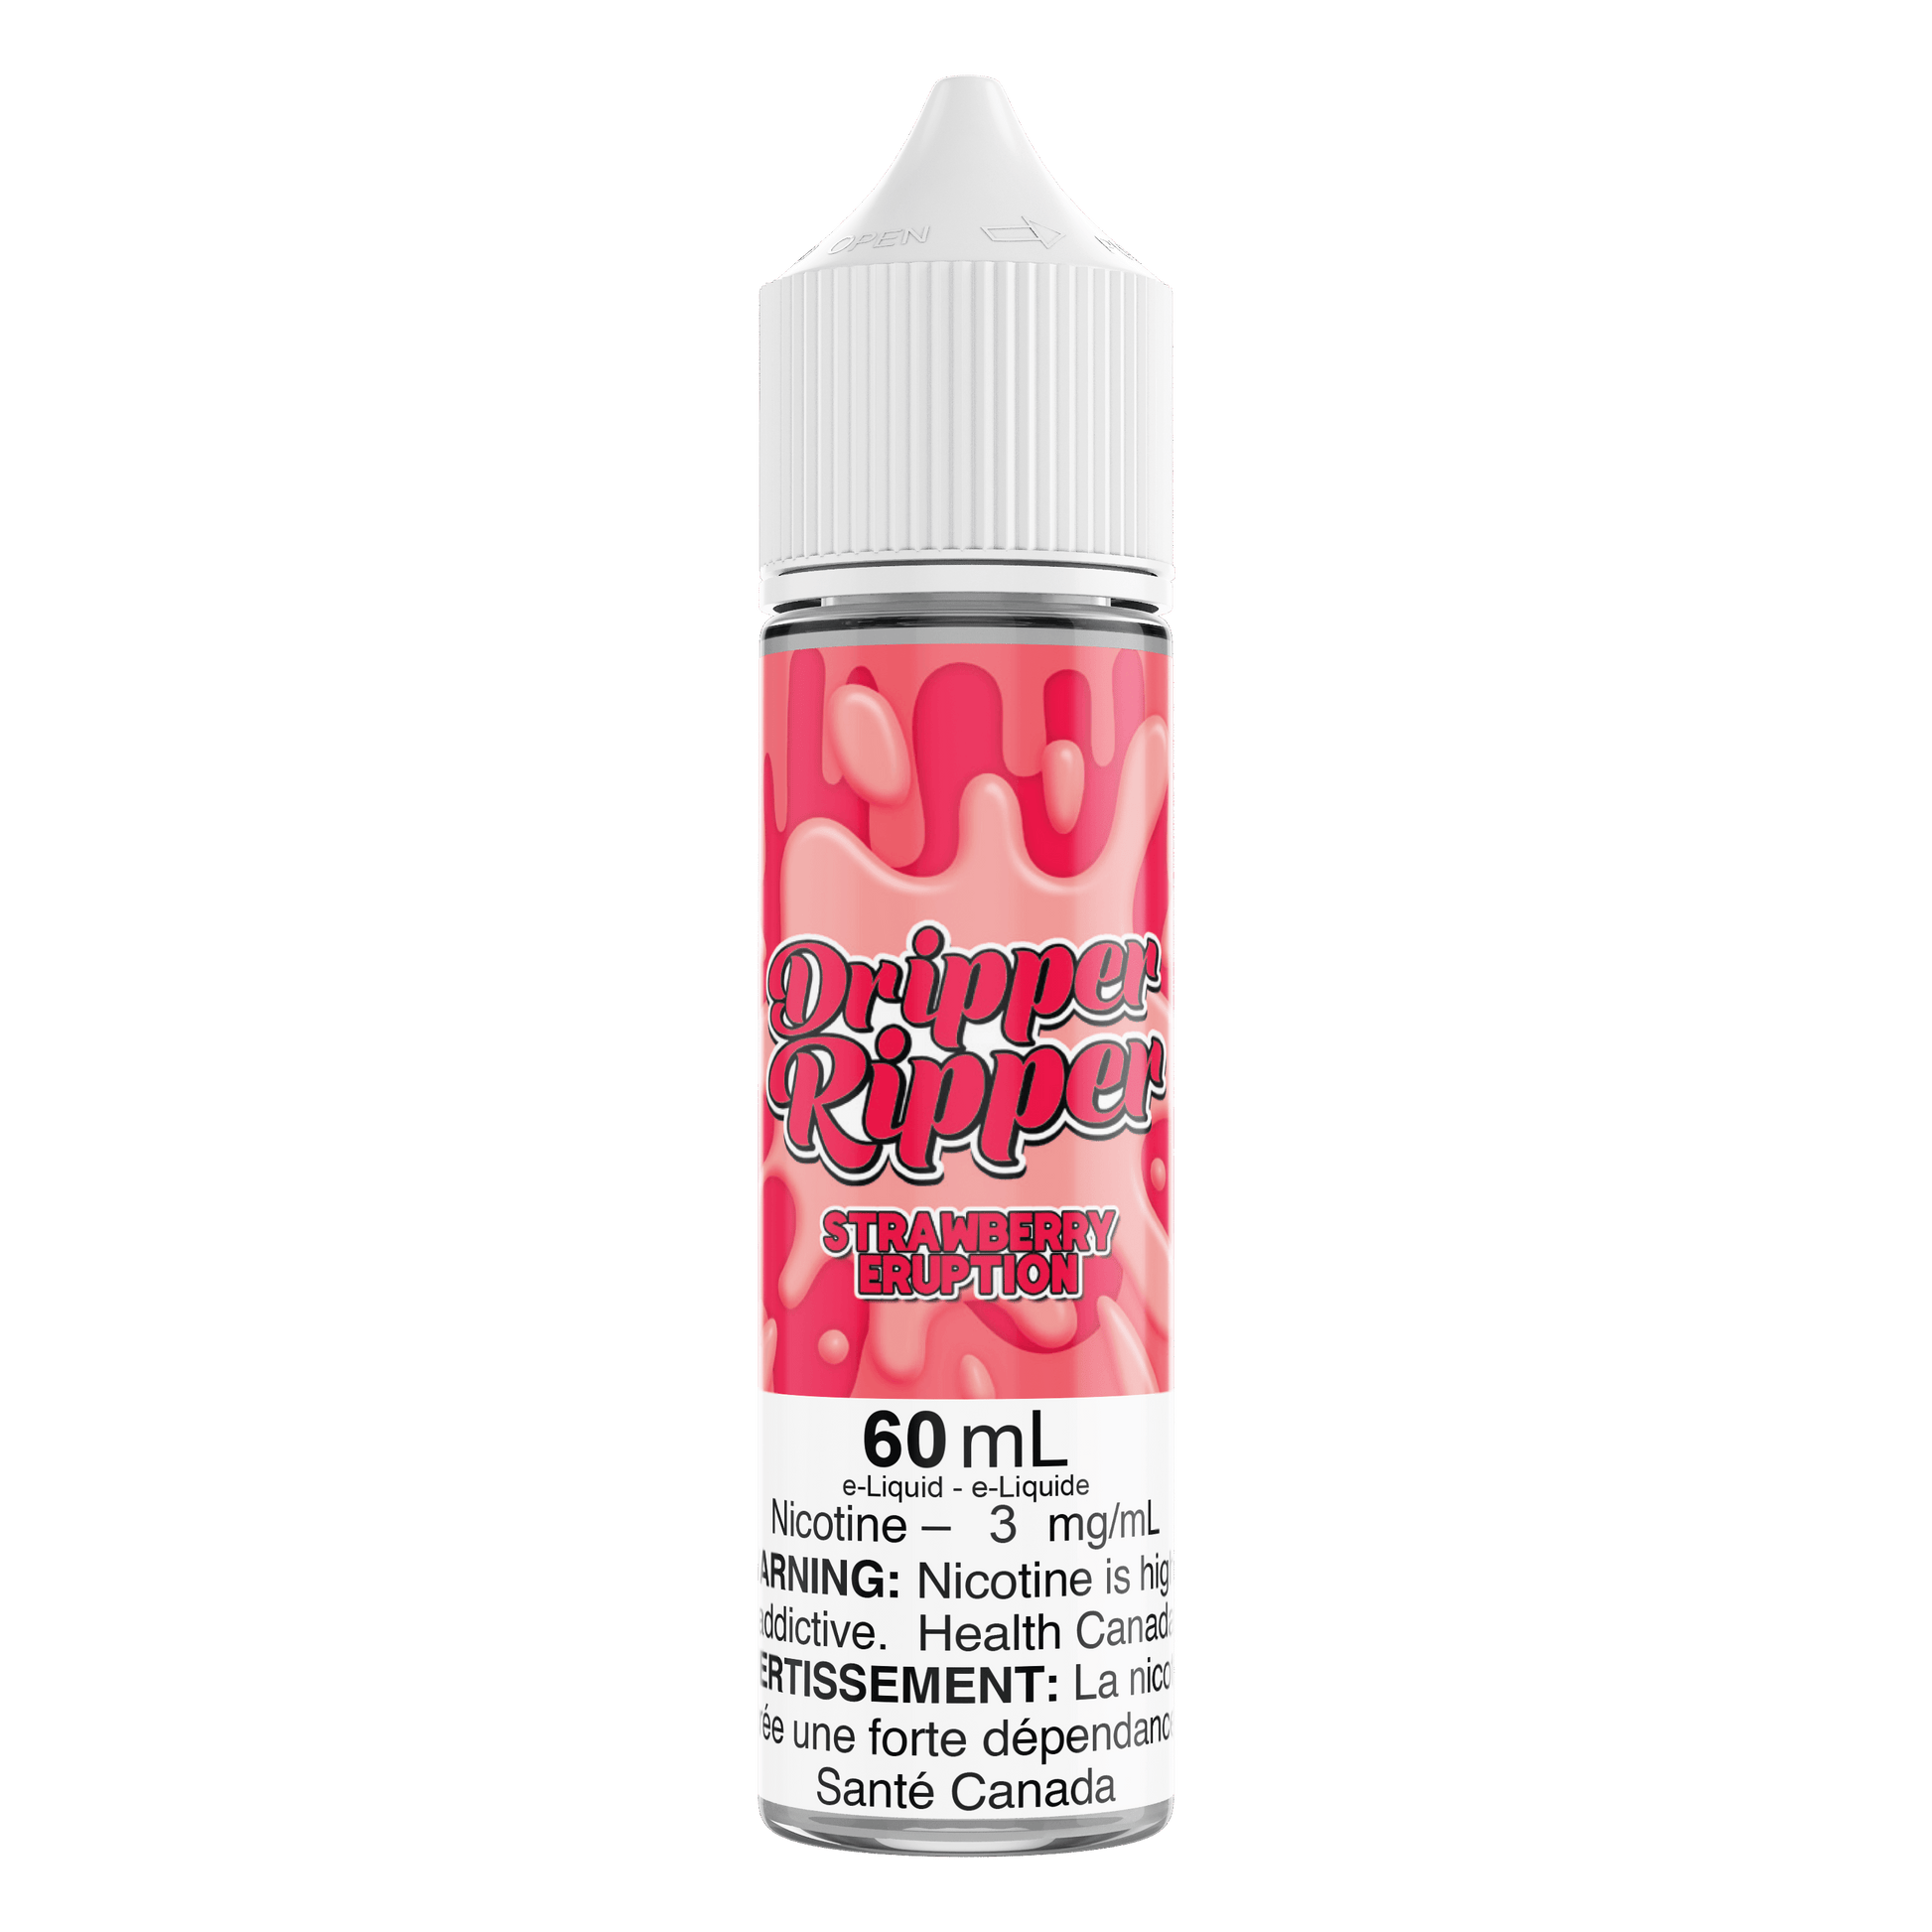 Dripper Ripper Strawberry Eruption - Vapor Shoppe